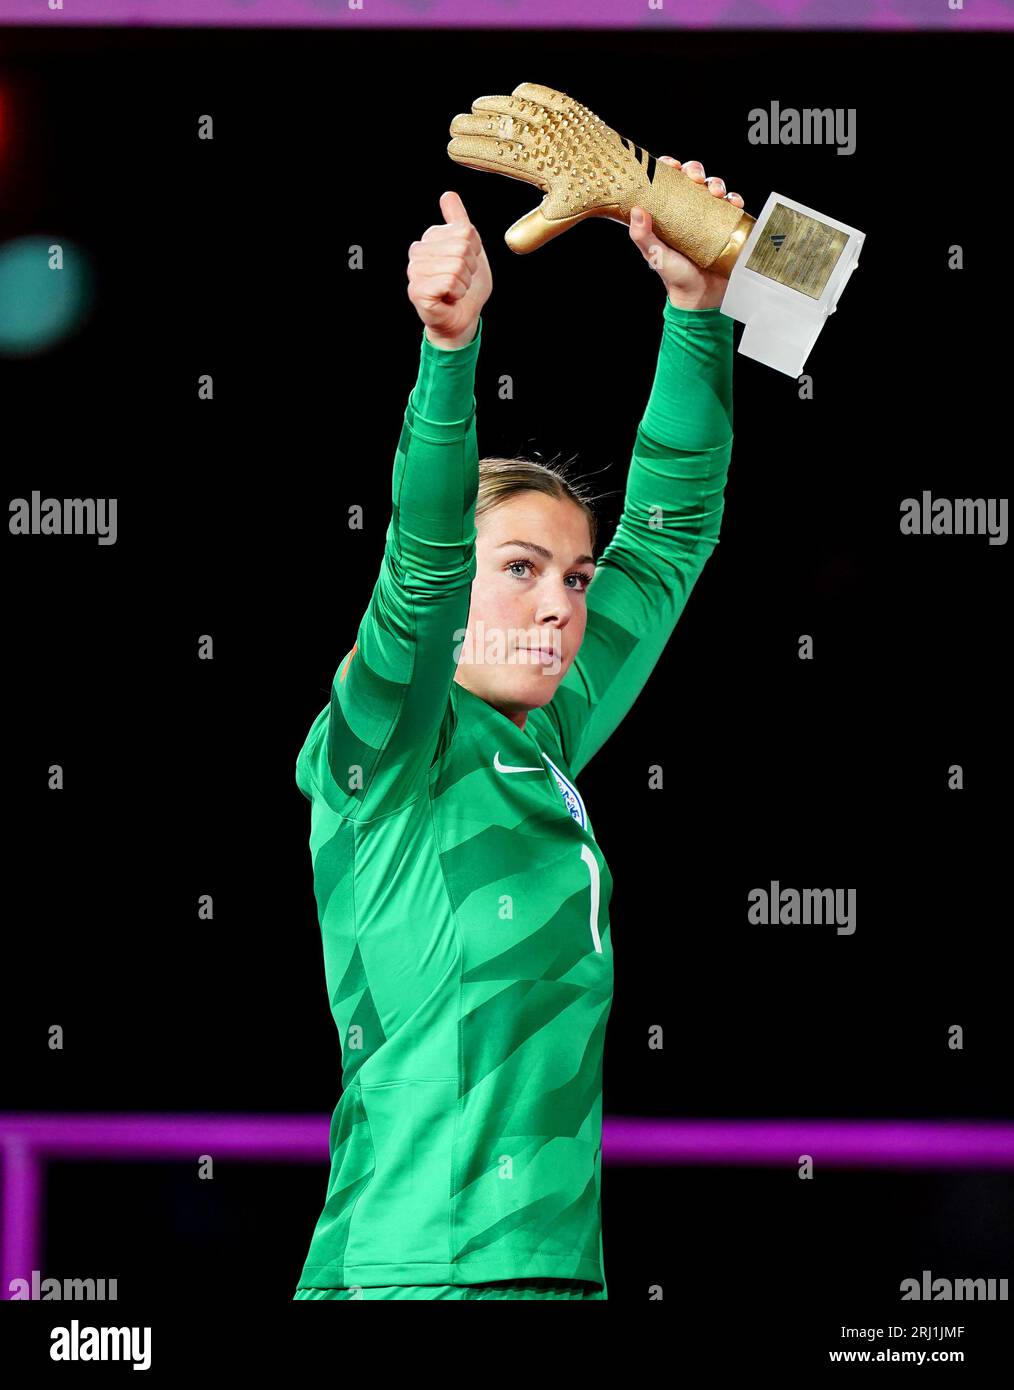 Die englische Torhüterin Mary Earps zeigt den Fans, nachdem sie am Ende des Endspiels der FIFA Frauen-Weltmeisterschaft im Stadion Australien, Sydney, ihren Golden Glove Award erhalten hat. Bilddatum: Sonntag, 20. August 2023. Stockfoto